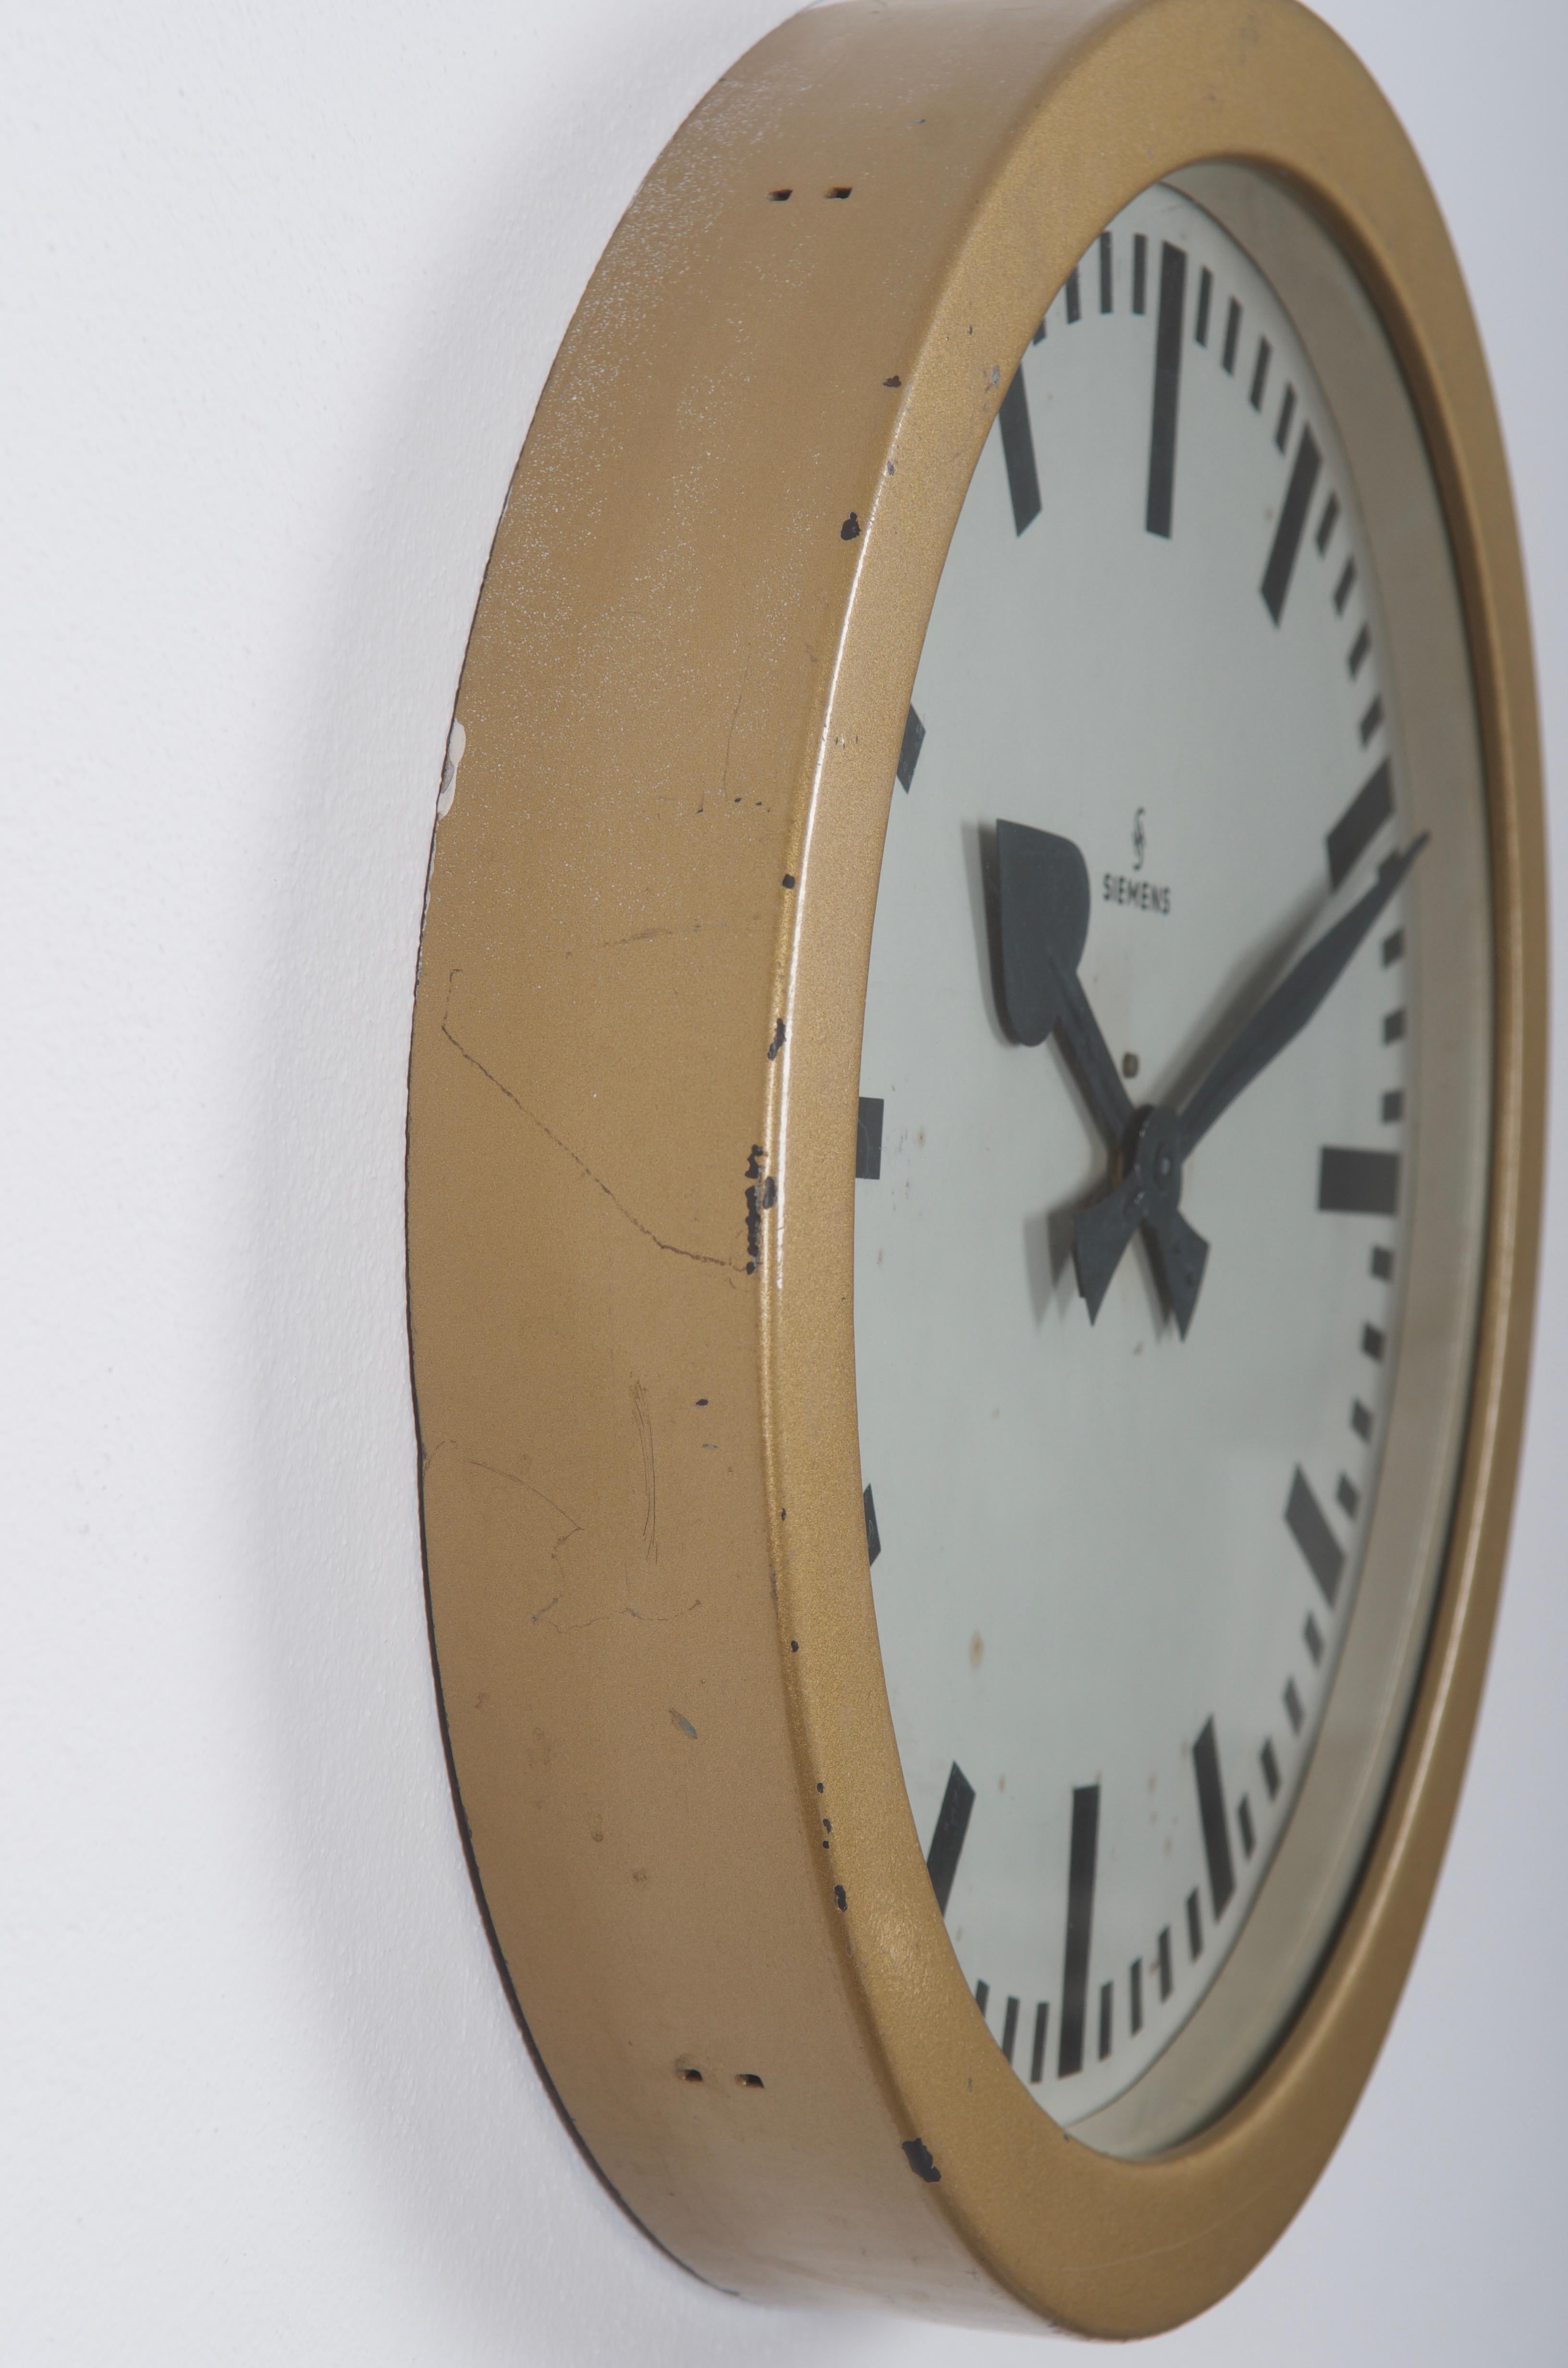 Grande horloge de gare allemande par Siemens & Halske du début des années 1950.
Autrefois horloge d'esclave à mouvement mécanique, elle est maintenant équipée d'un mouvement moderne à quartz avec une batterie.
Cadre en acier laqué avec façade en